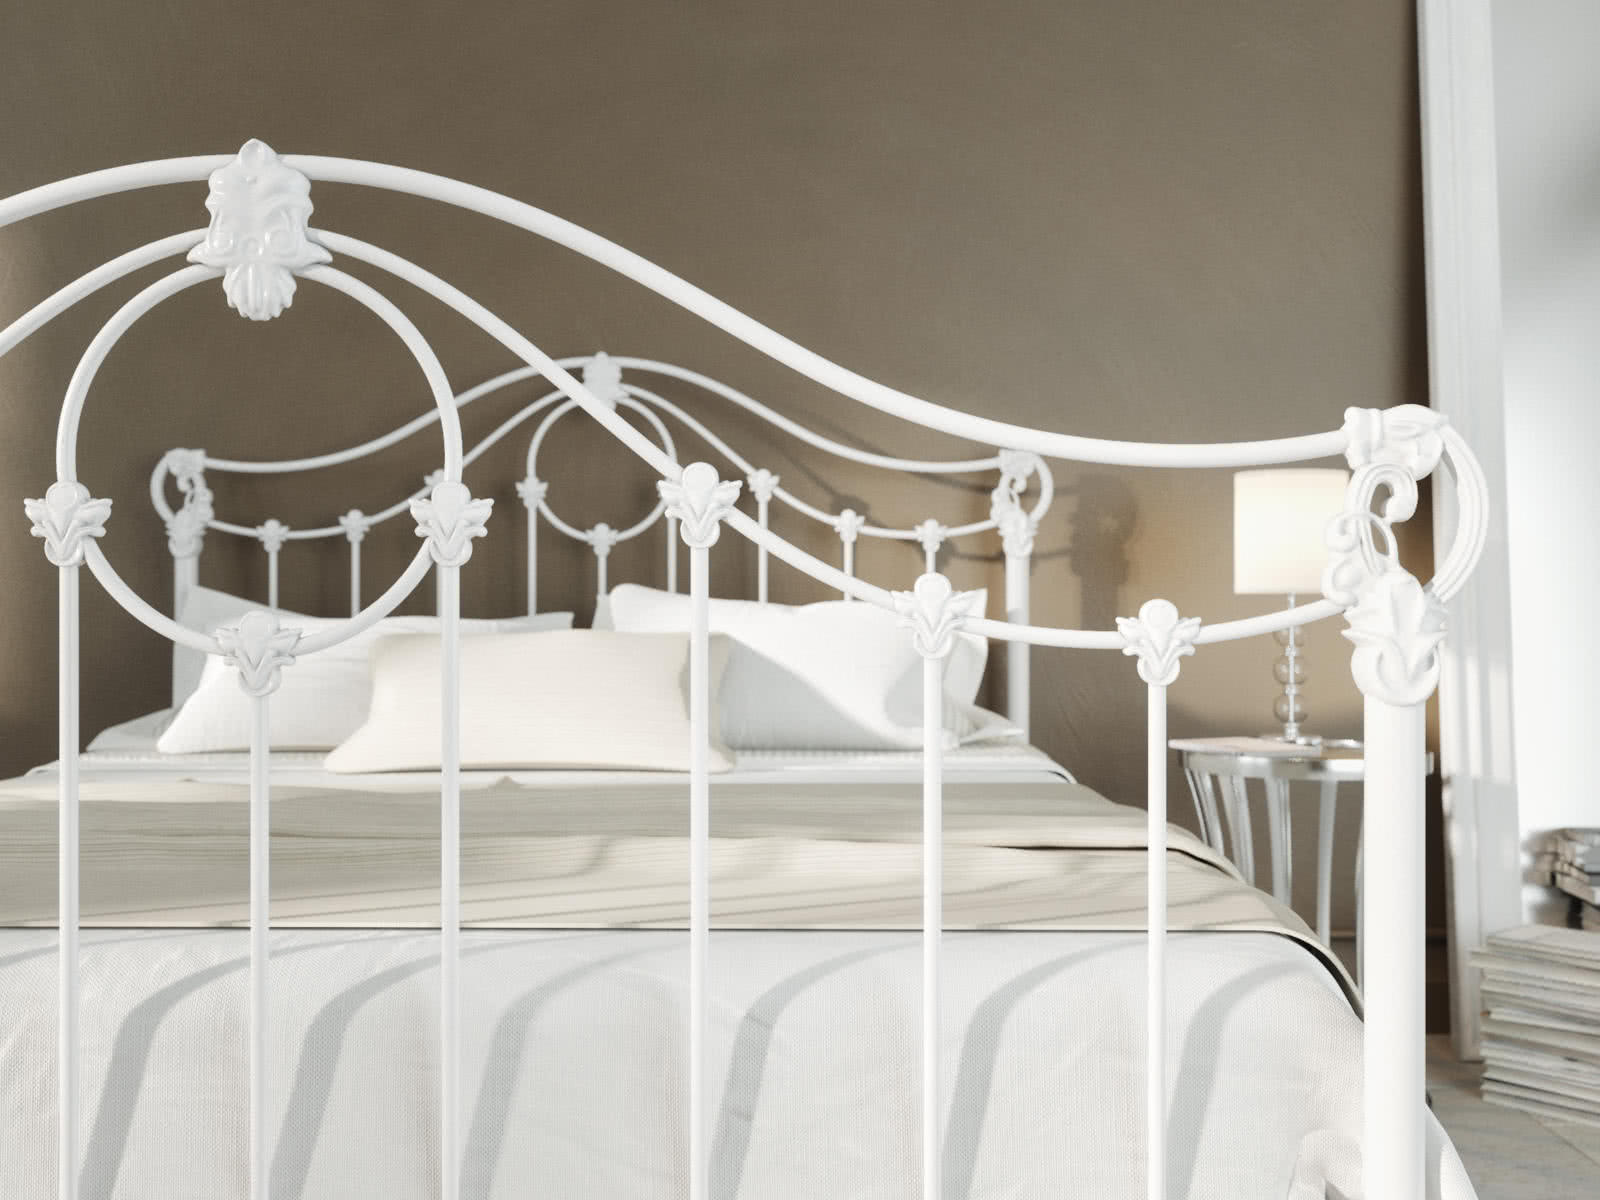 Кровать Dream Master Sylva (1 спинка) 120 х 190 см Белый глянцевый от производителя — цены фабрики, доставка